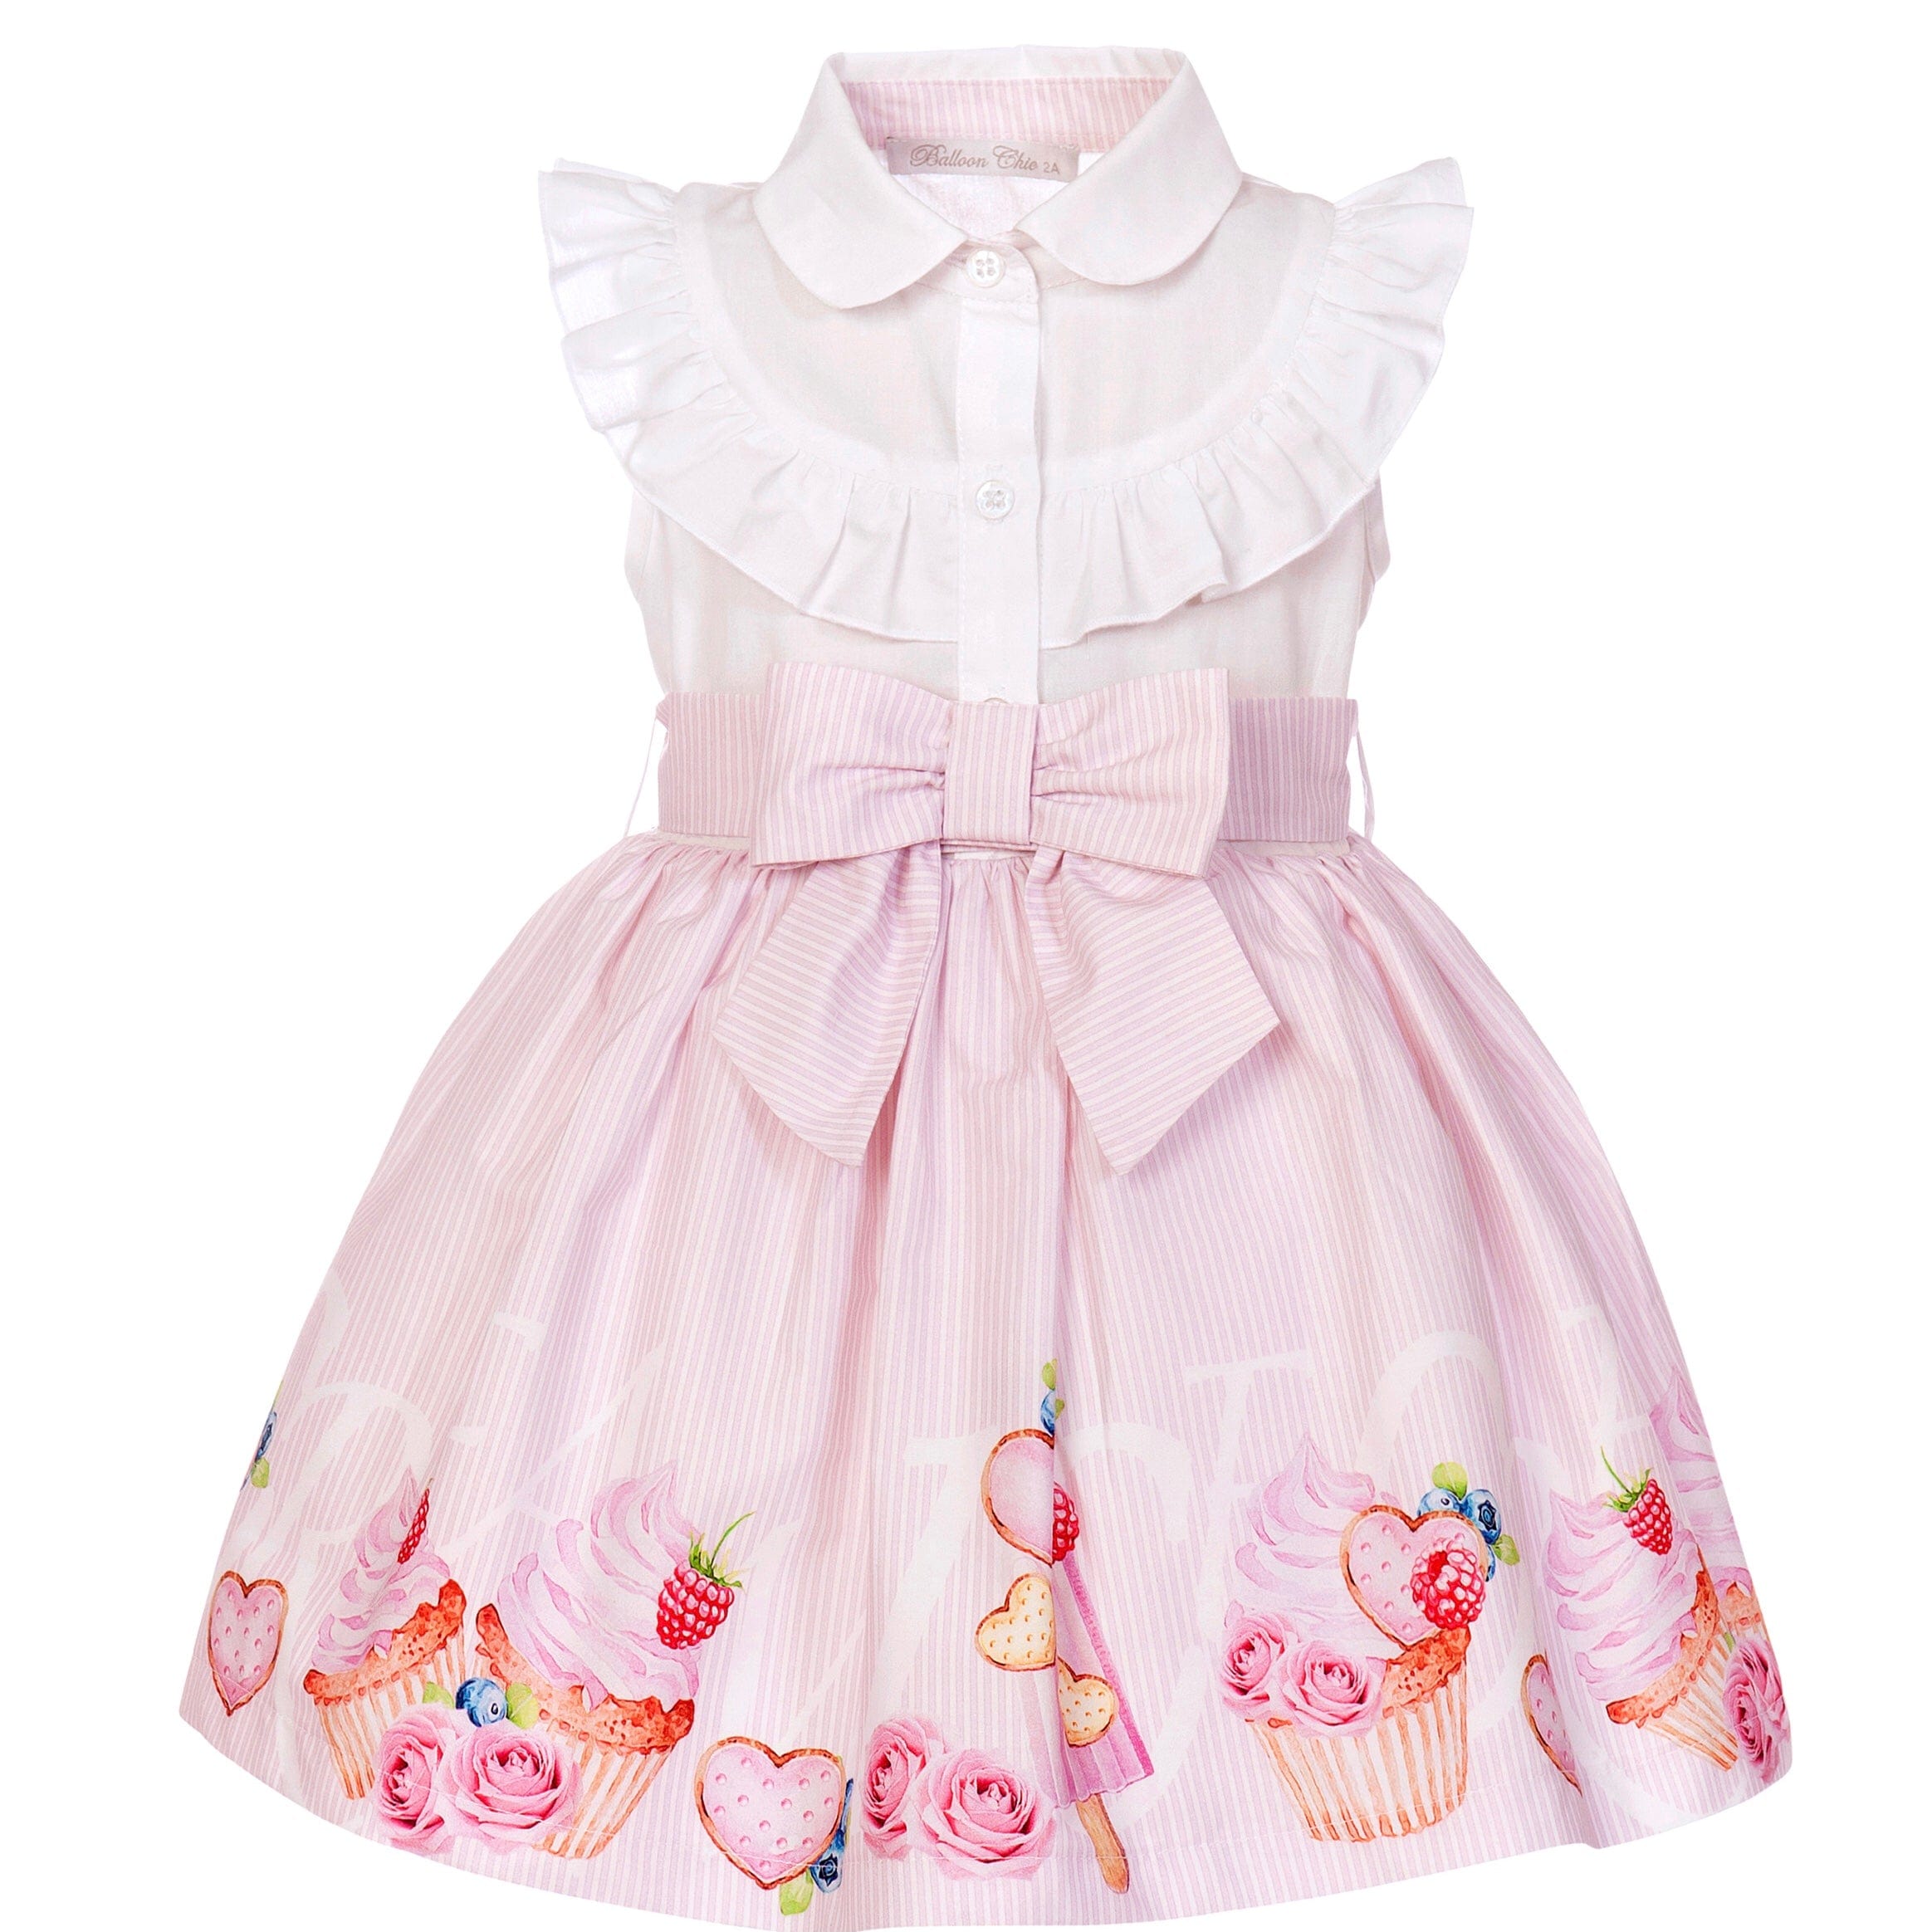 BALLOON CHIC - Cupcake Blouse Dress - Pink